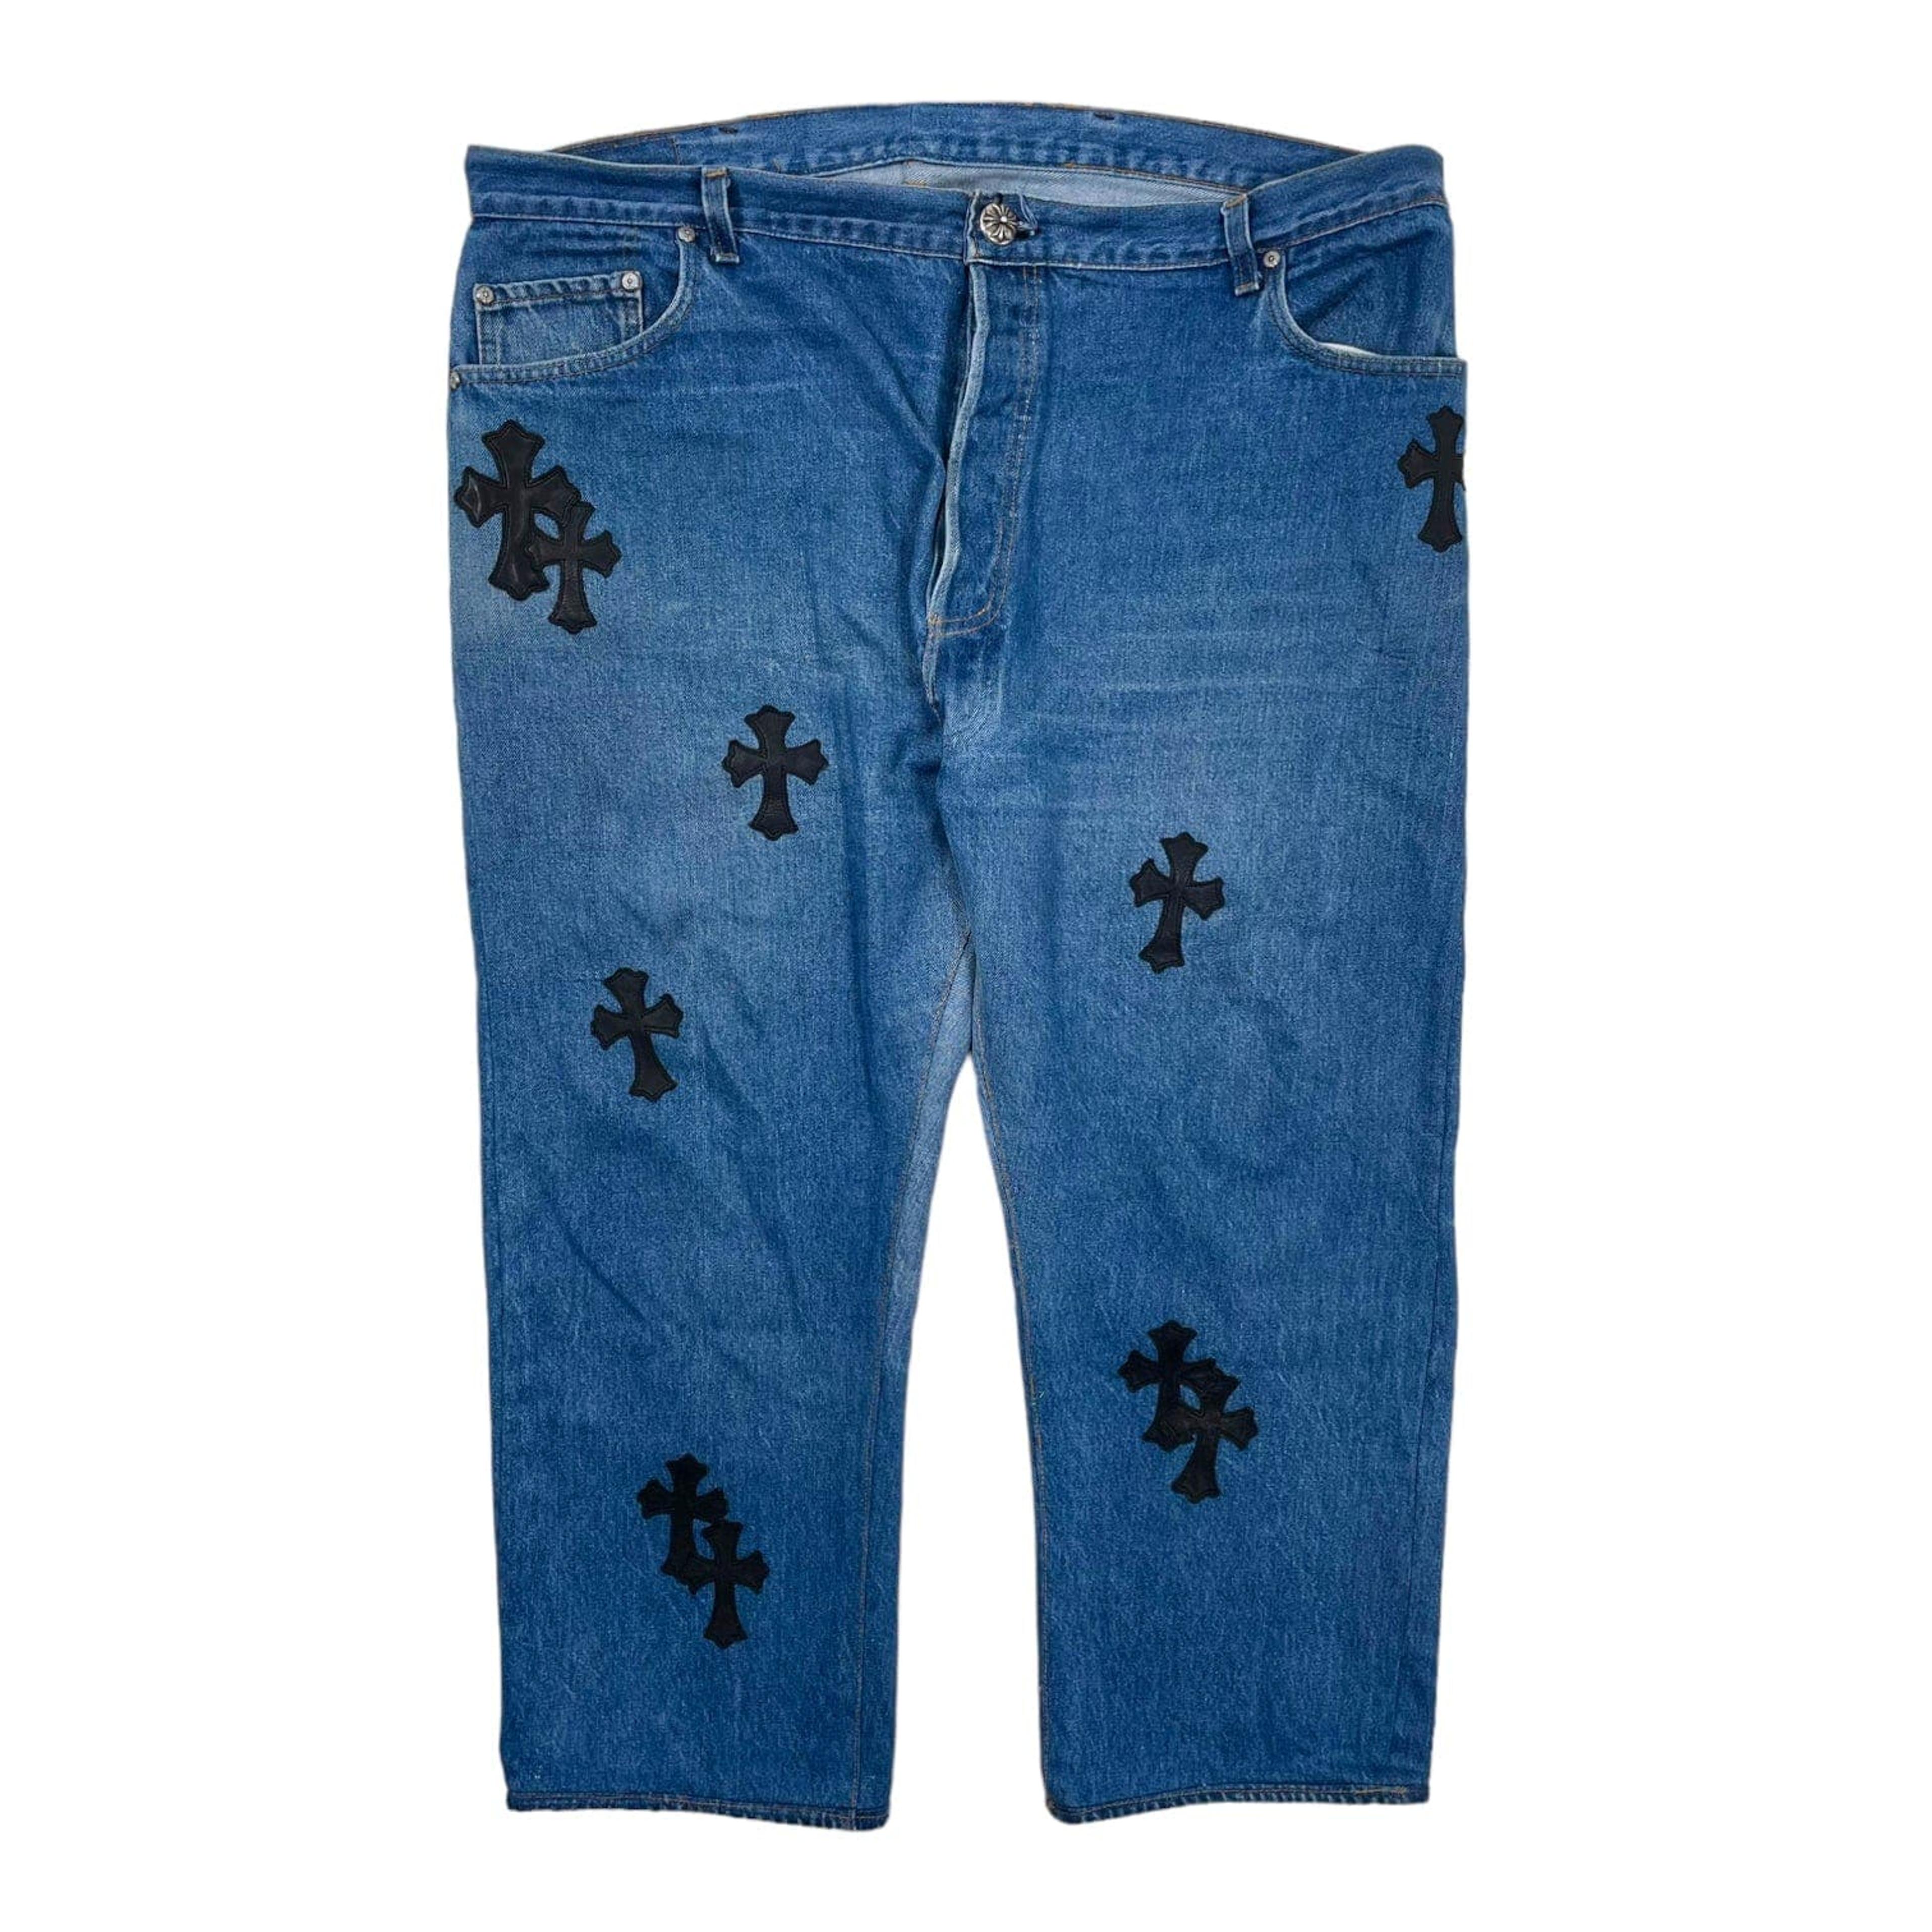 Chrome Hearts Levi's Cross Patch Jeans Blue (19 Cross Patch) Pre